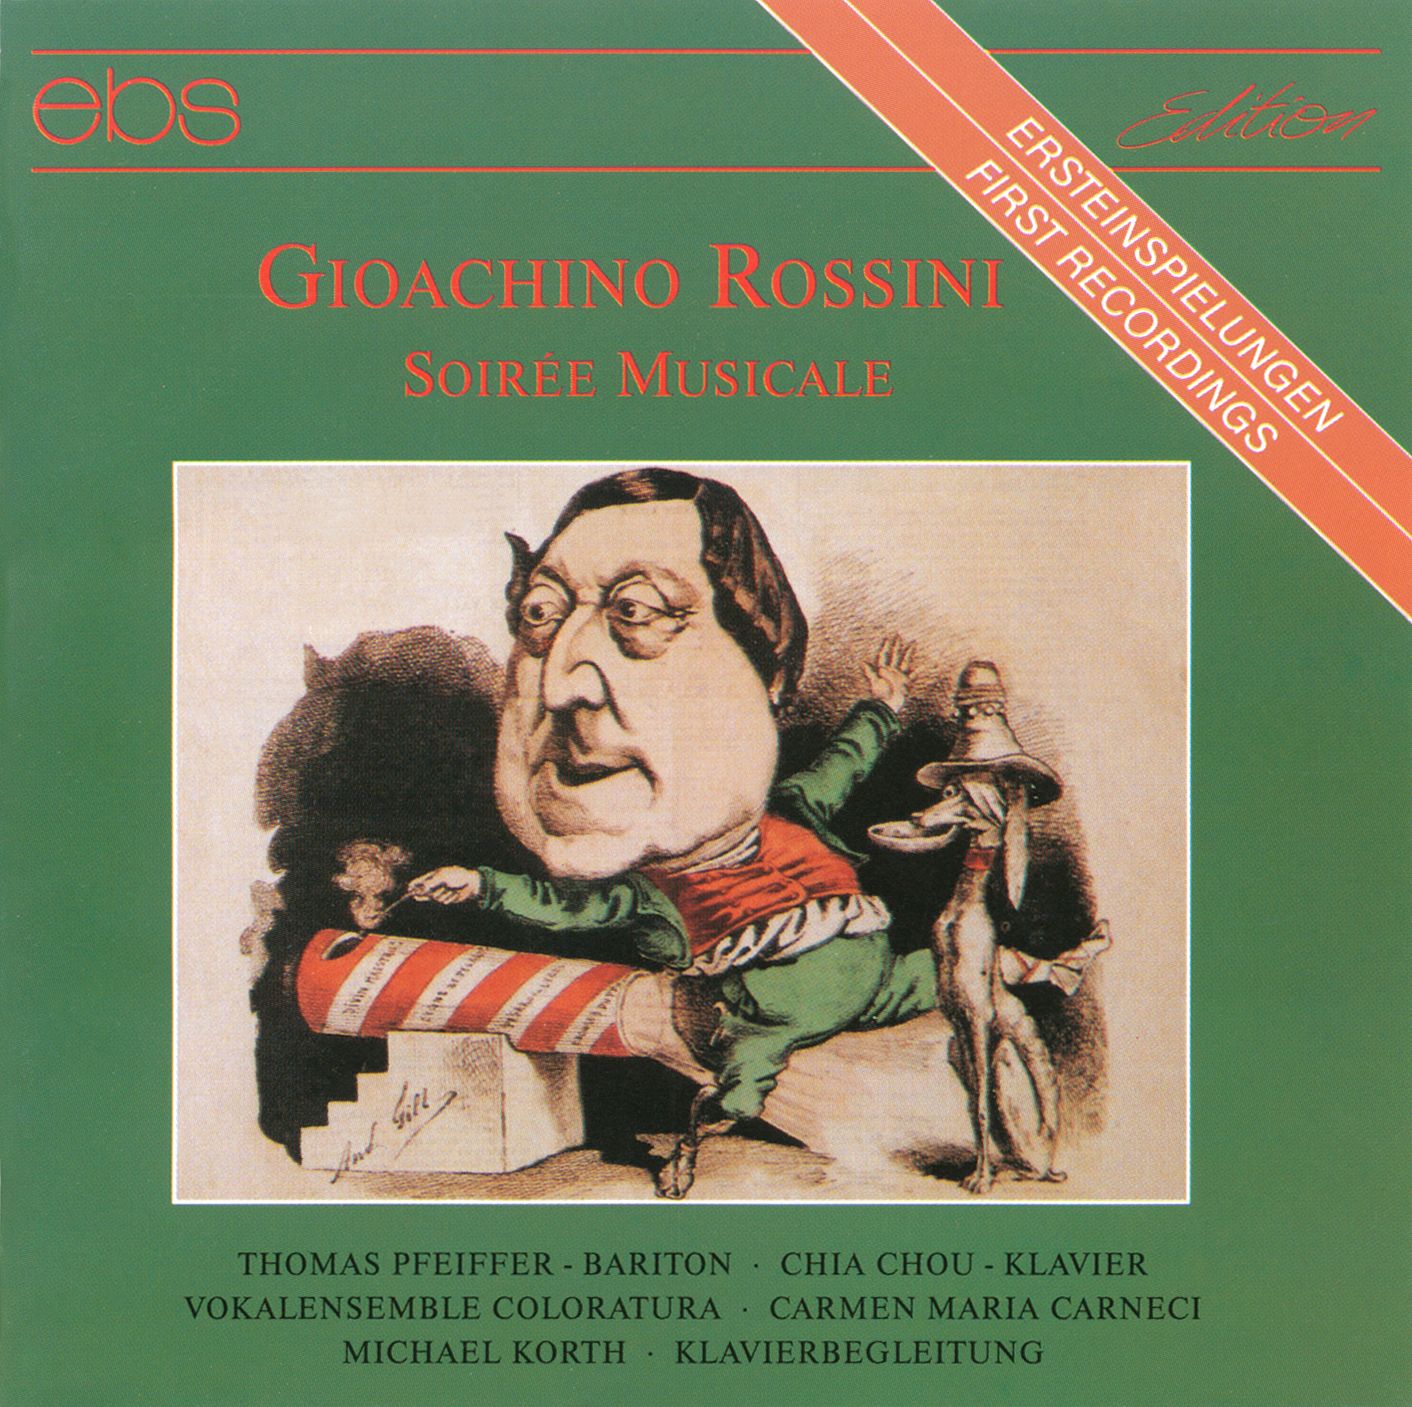 Gioacchino Rossini - Soirée Musicale